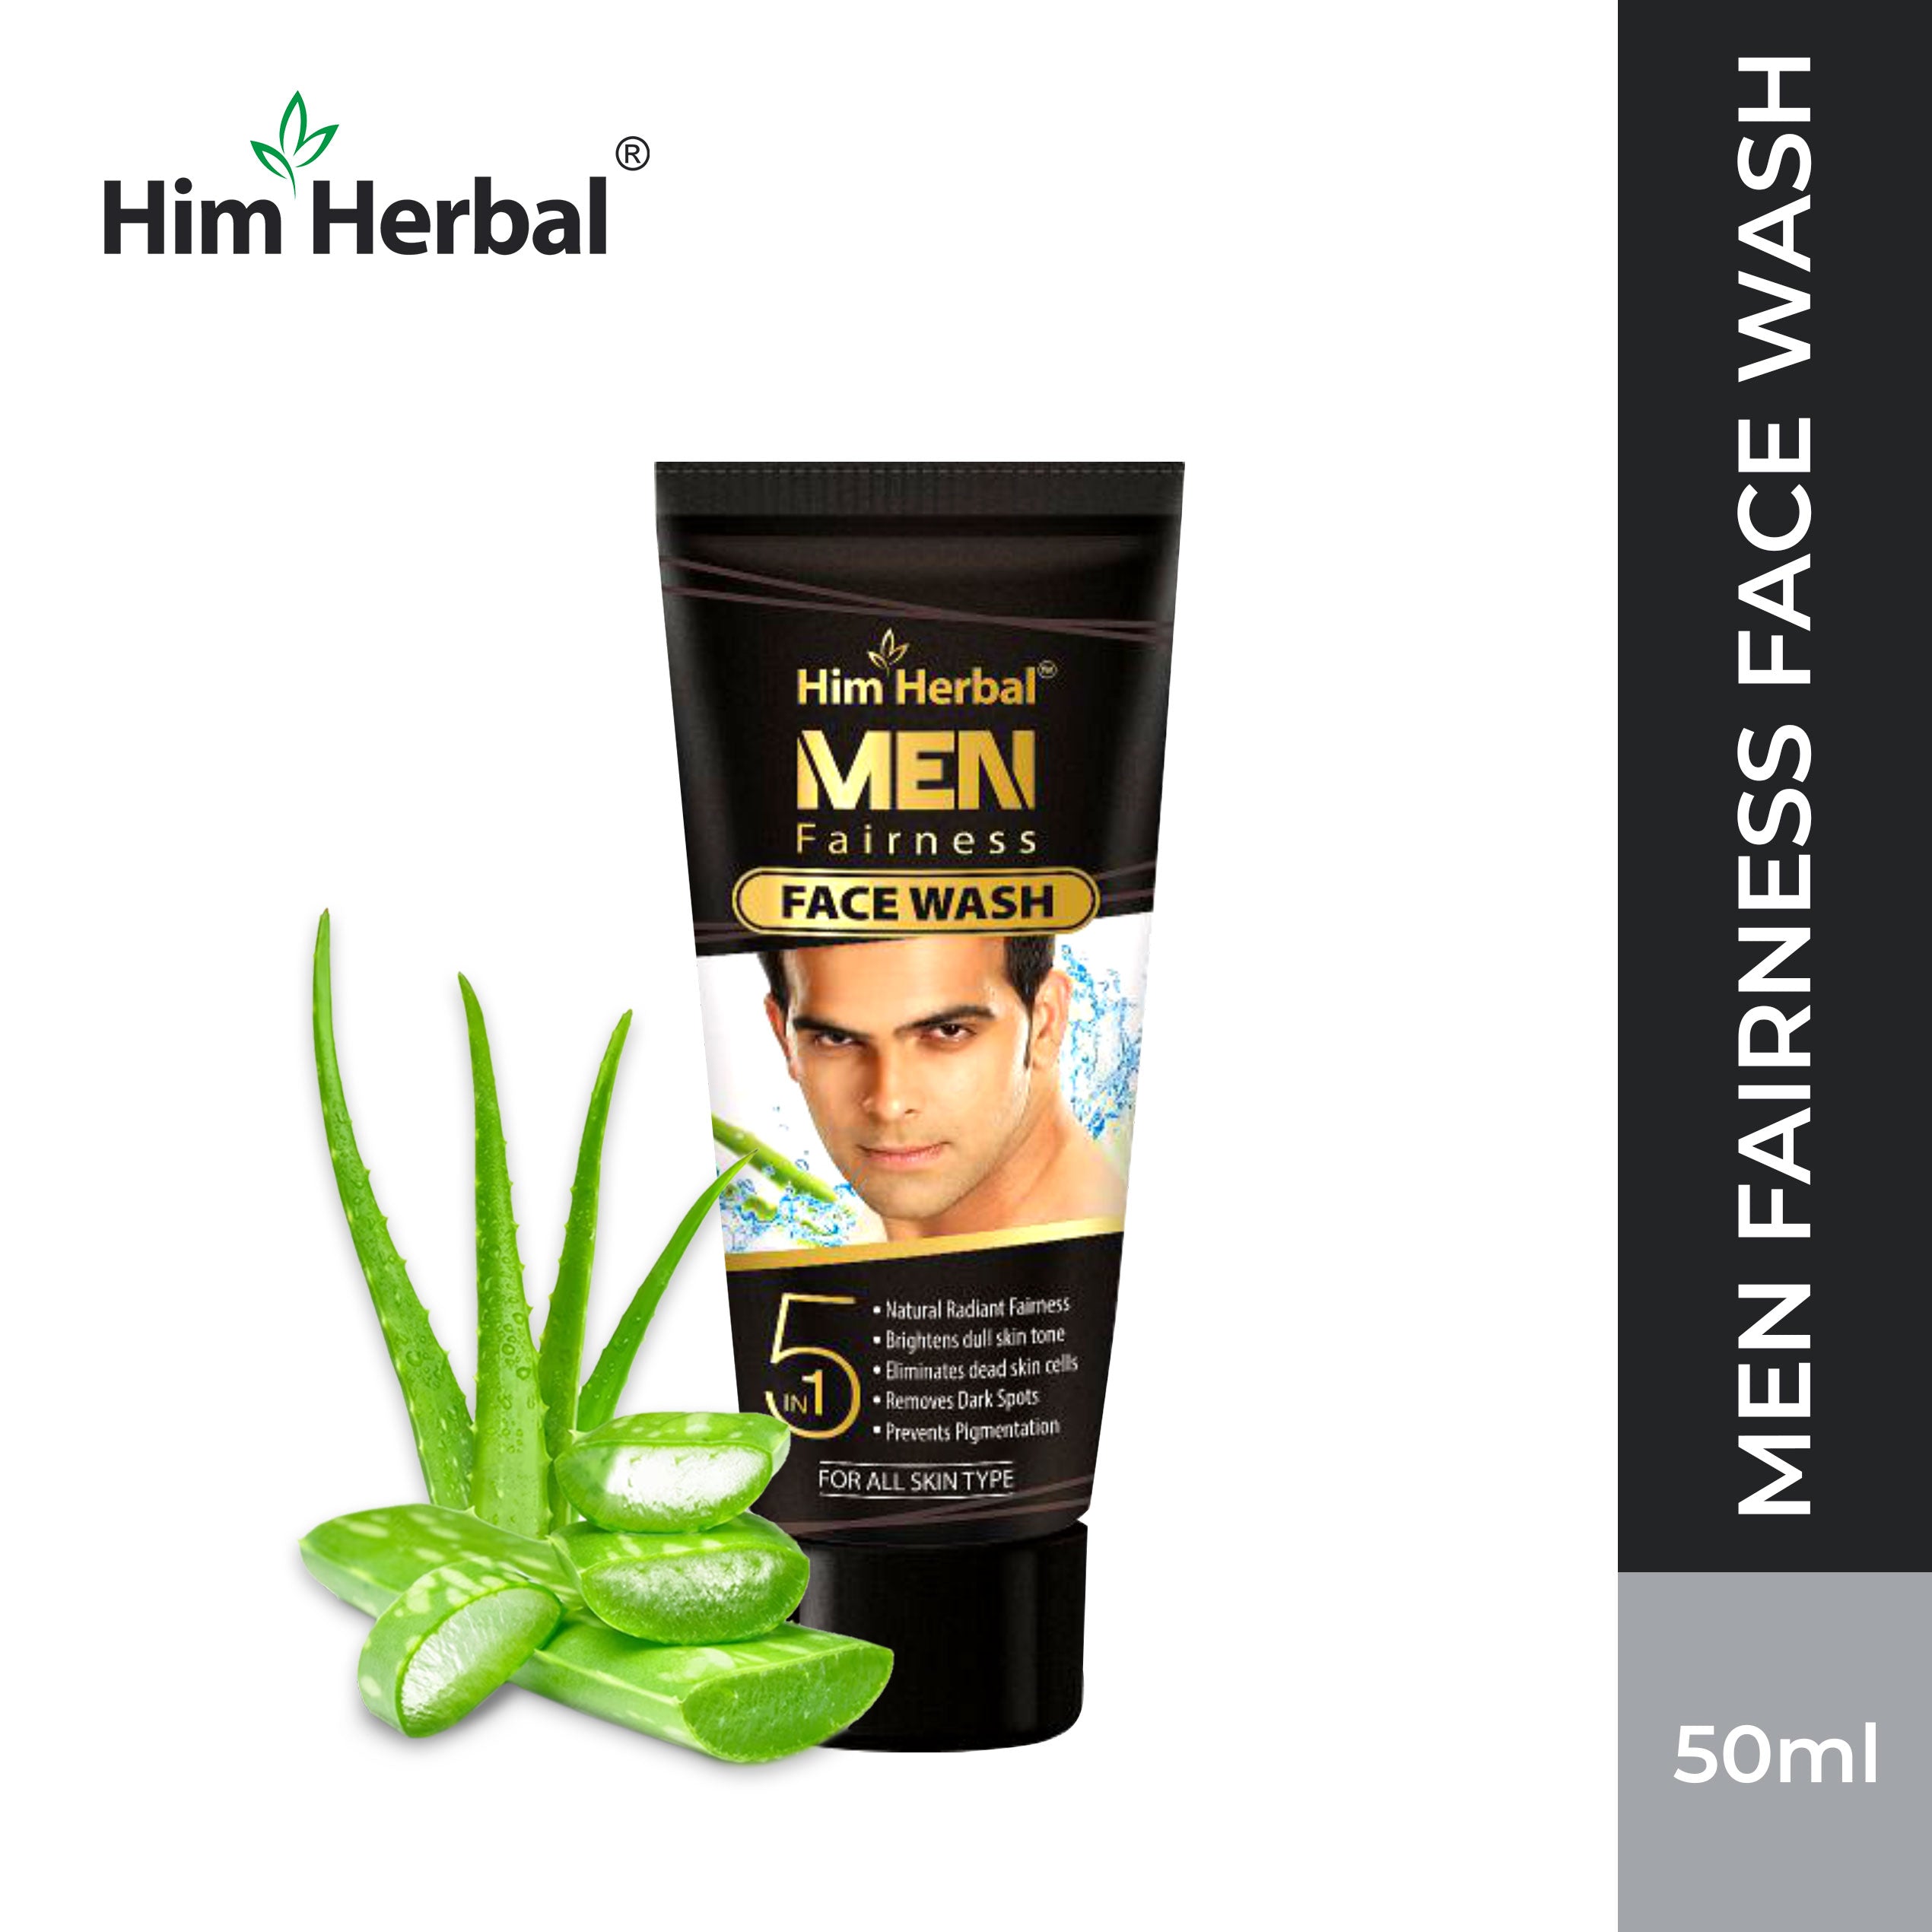 Him Herbal Men Fairness Facewash